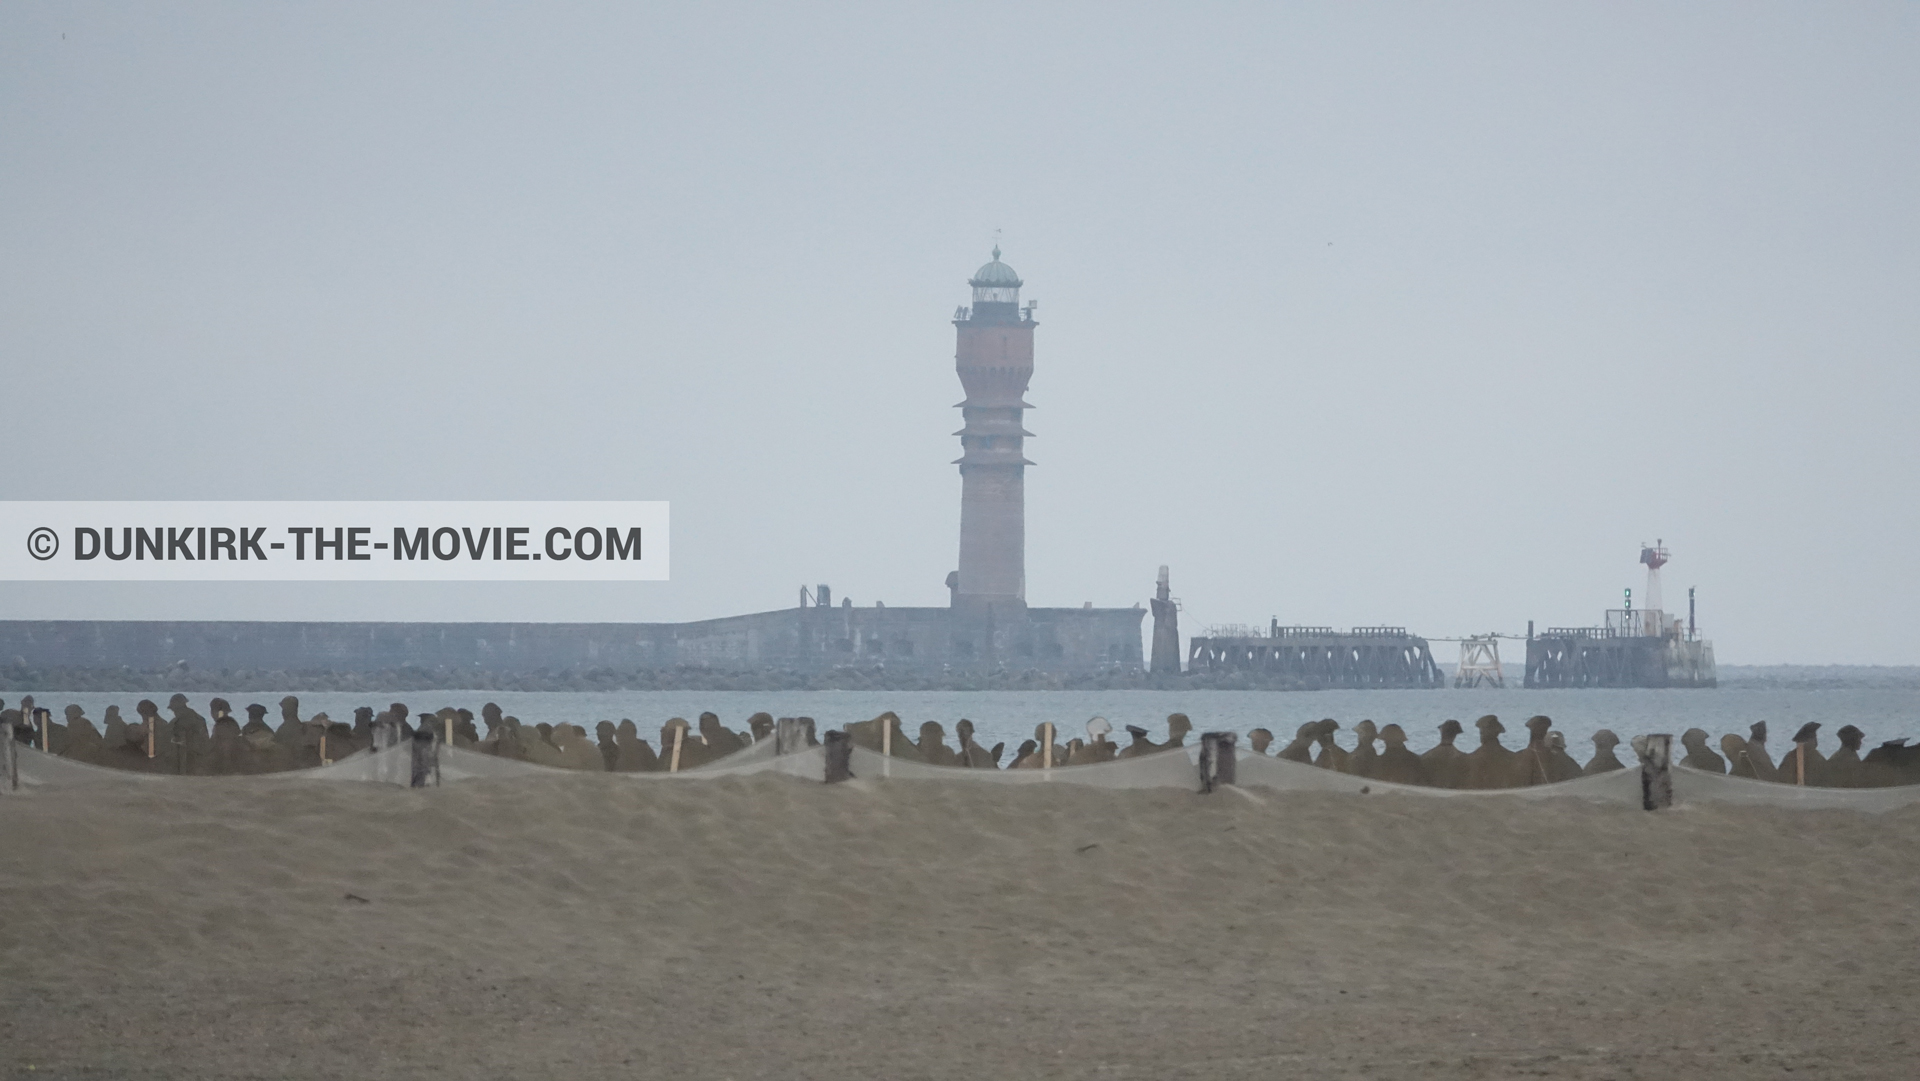 Fotos con faro de Saint-Pol-sur-Mer, playa,  durante el rodaje de la película Dunkerque de Nolan